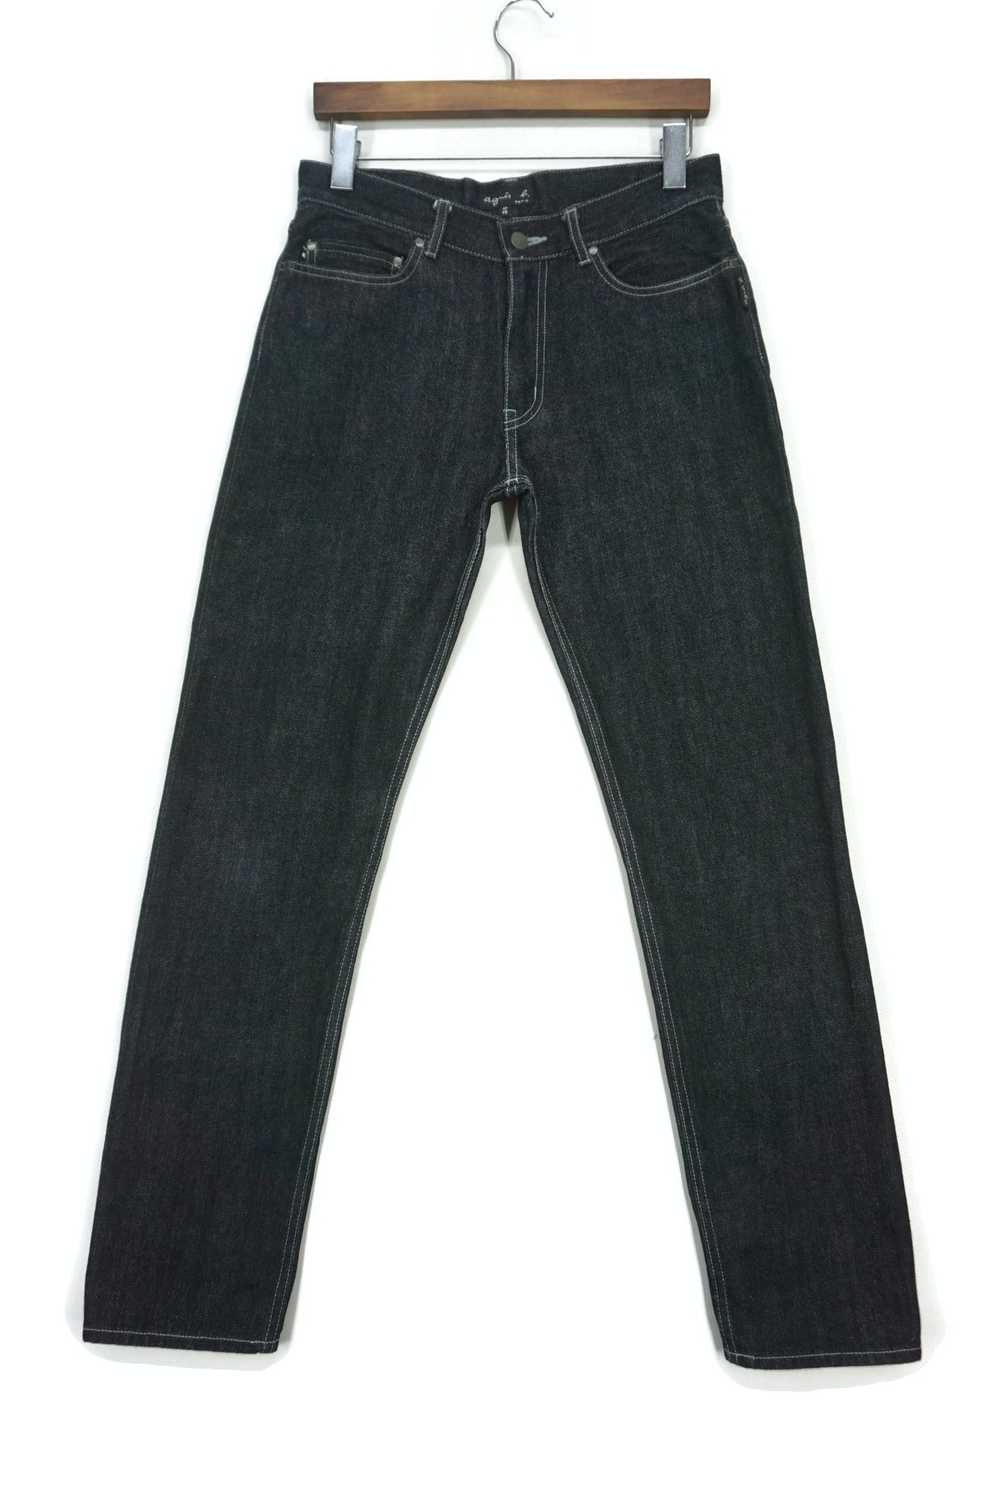 Agnes B. × Designer Selvedge Jeans Straight Leg P… - image 2